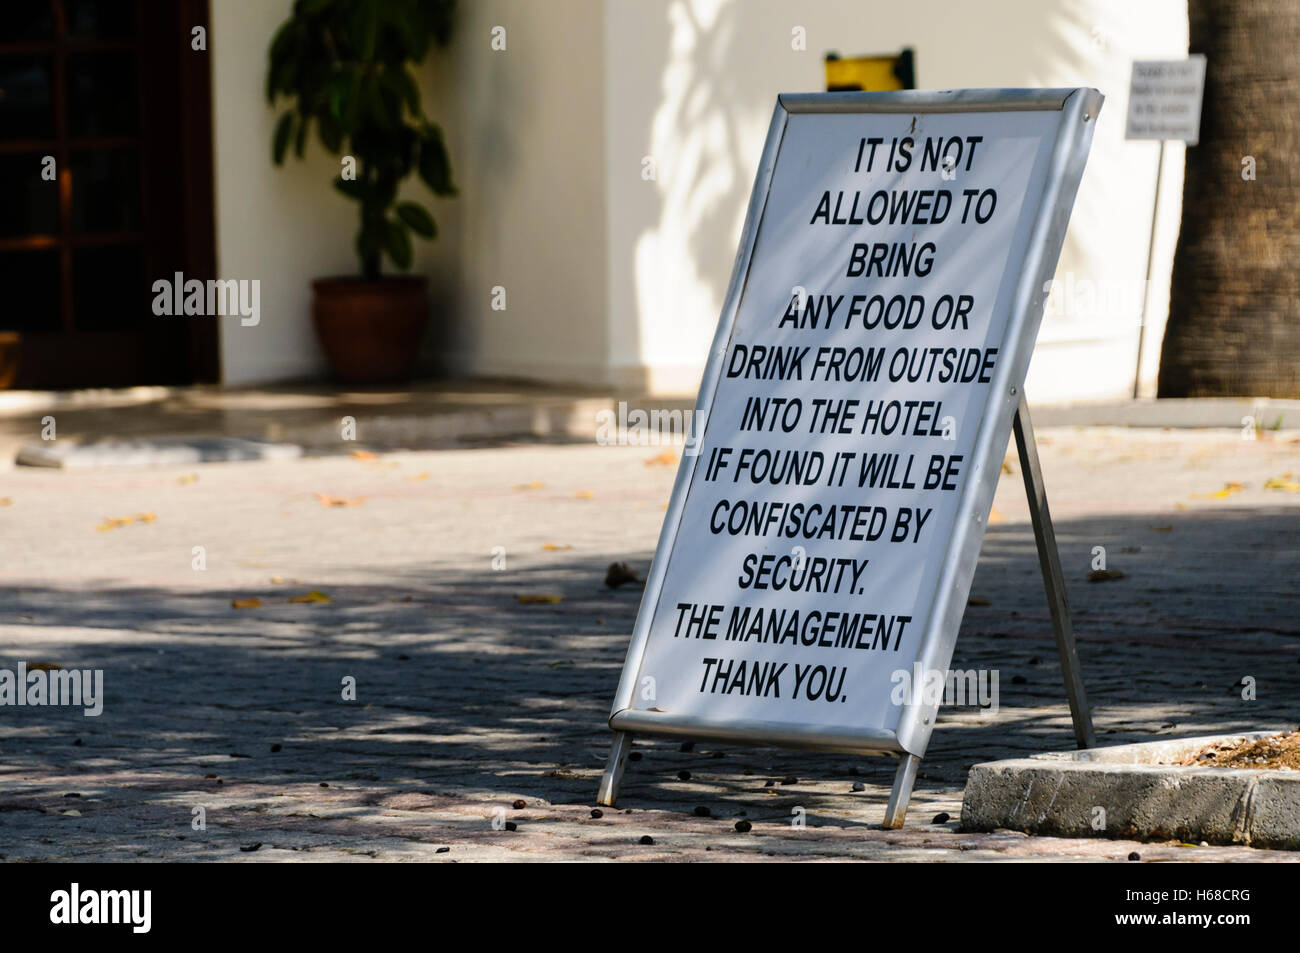 Zeichen außerhalb des Hotels ist es nicht erlaubt, zu Essen oder zu Trinken von außerhalb ins Hotel zu bringen. Wenn es gefunden wird durch Sicherheit beschlagnahmt werden. Der verwaltung Danke. Stockfoto